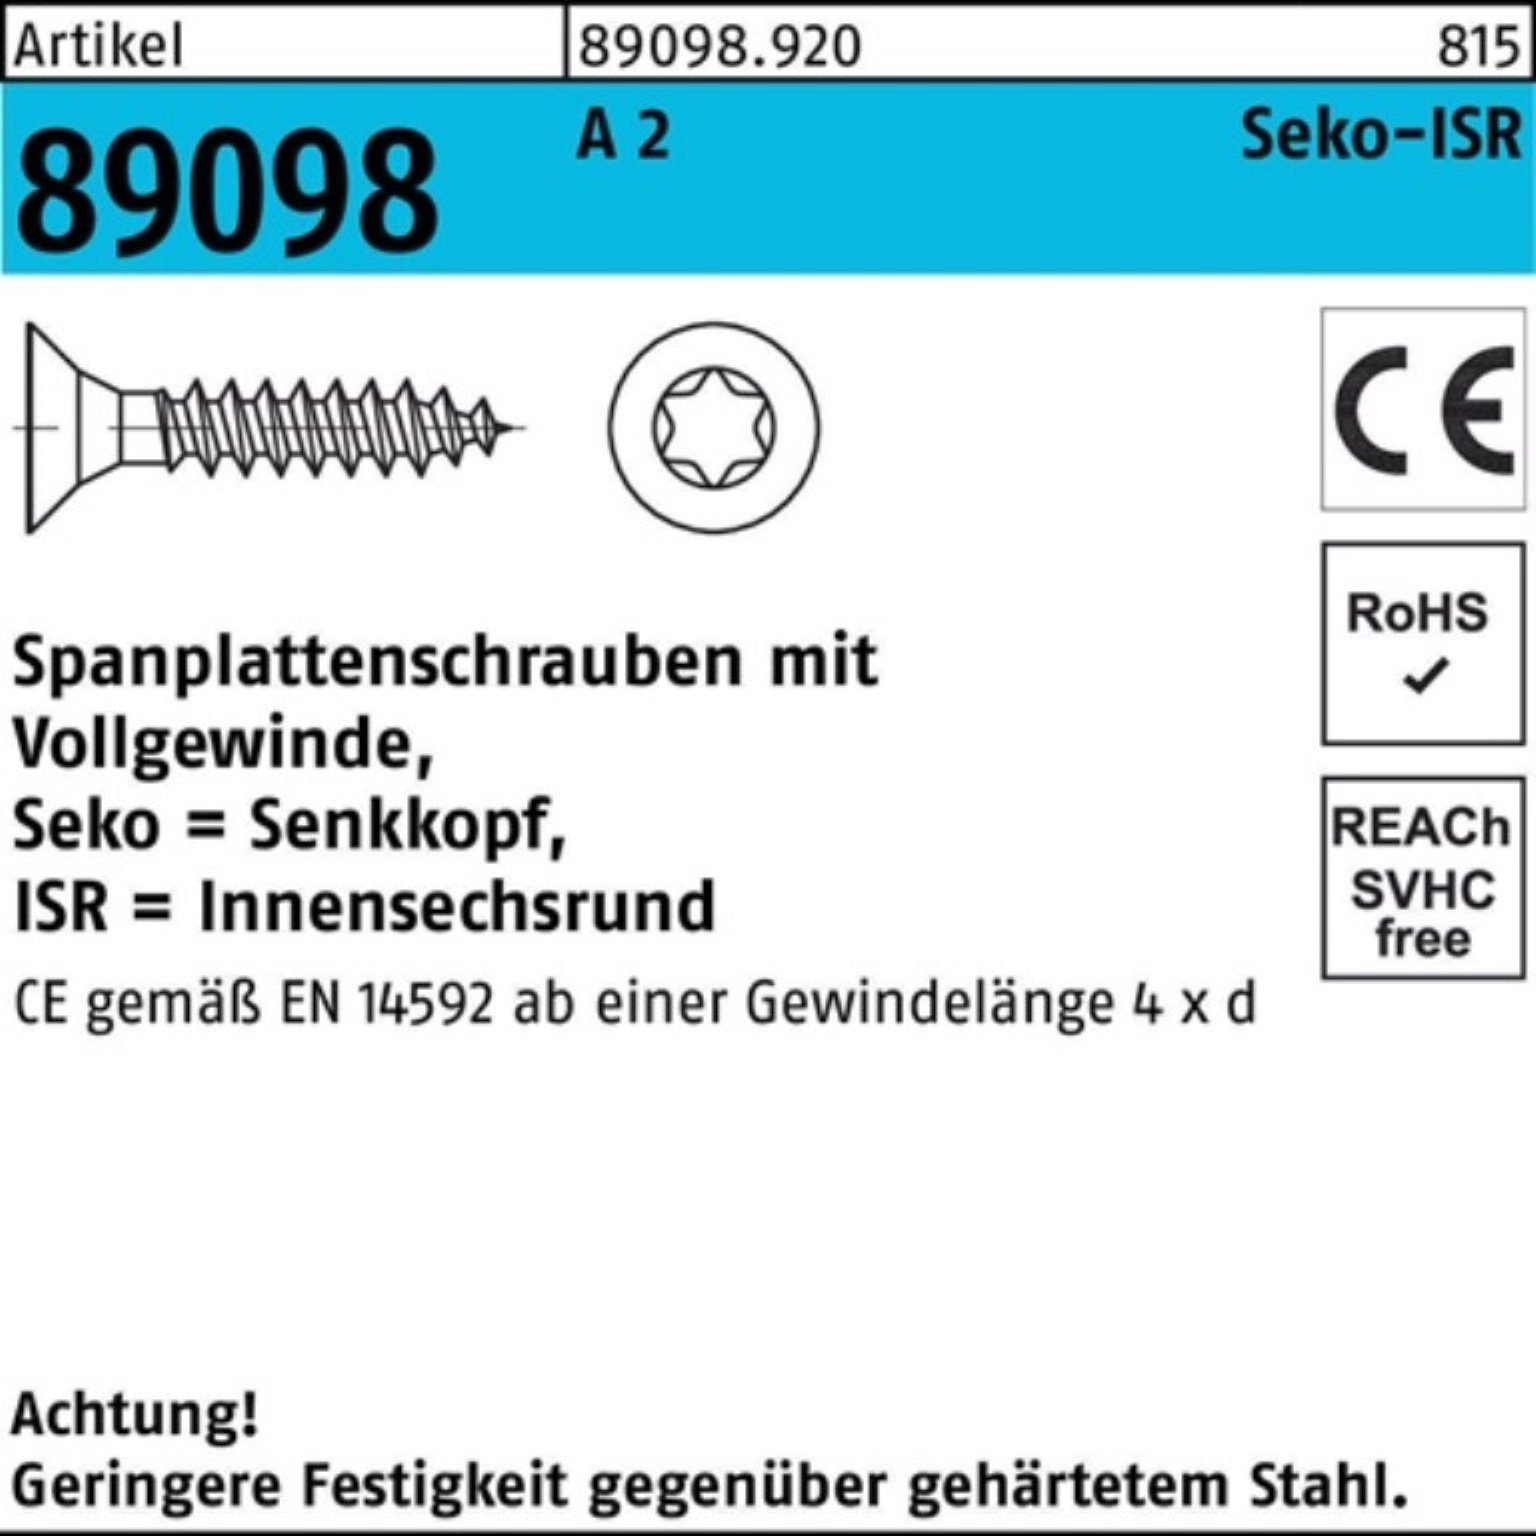 89098 200er R ISR VG A Pack SEKO S Spanplattenschraube Reyher 3x 200 40-T10 Spanplattenschraube 2